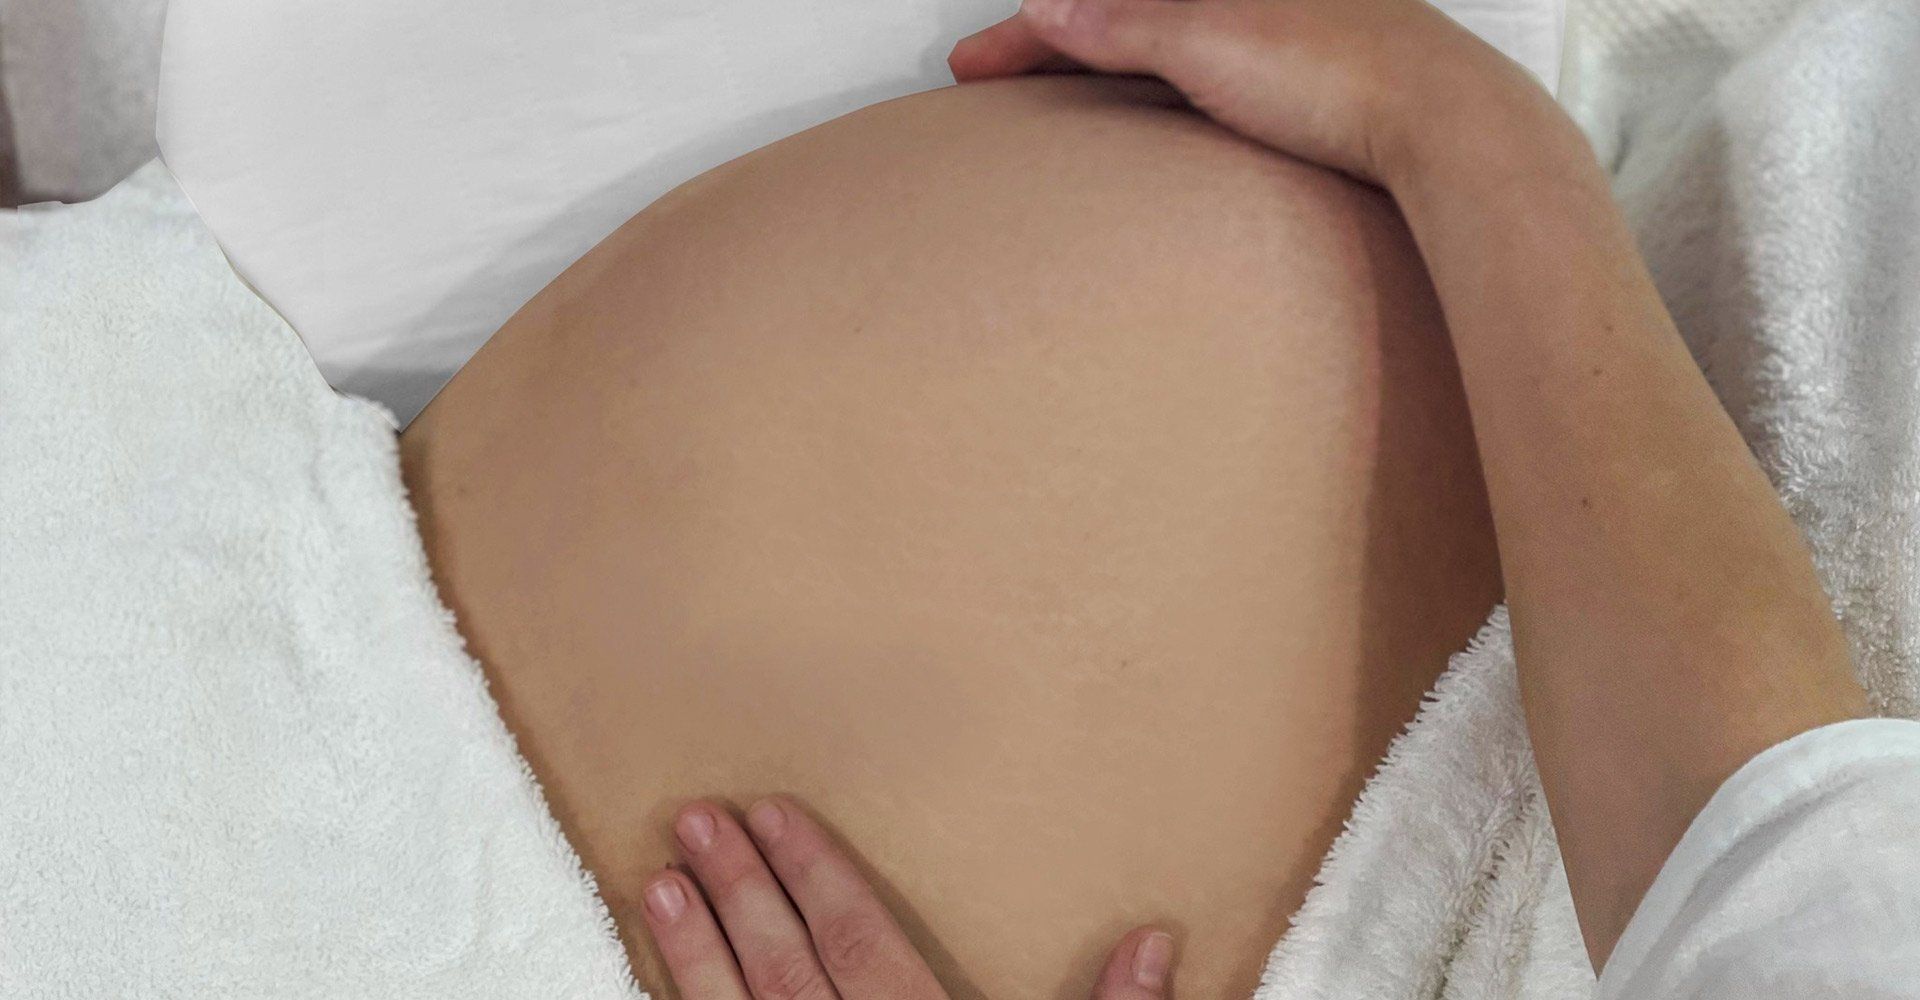 pregnancy massage